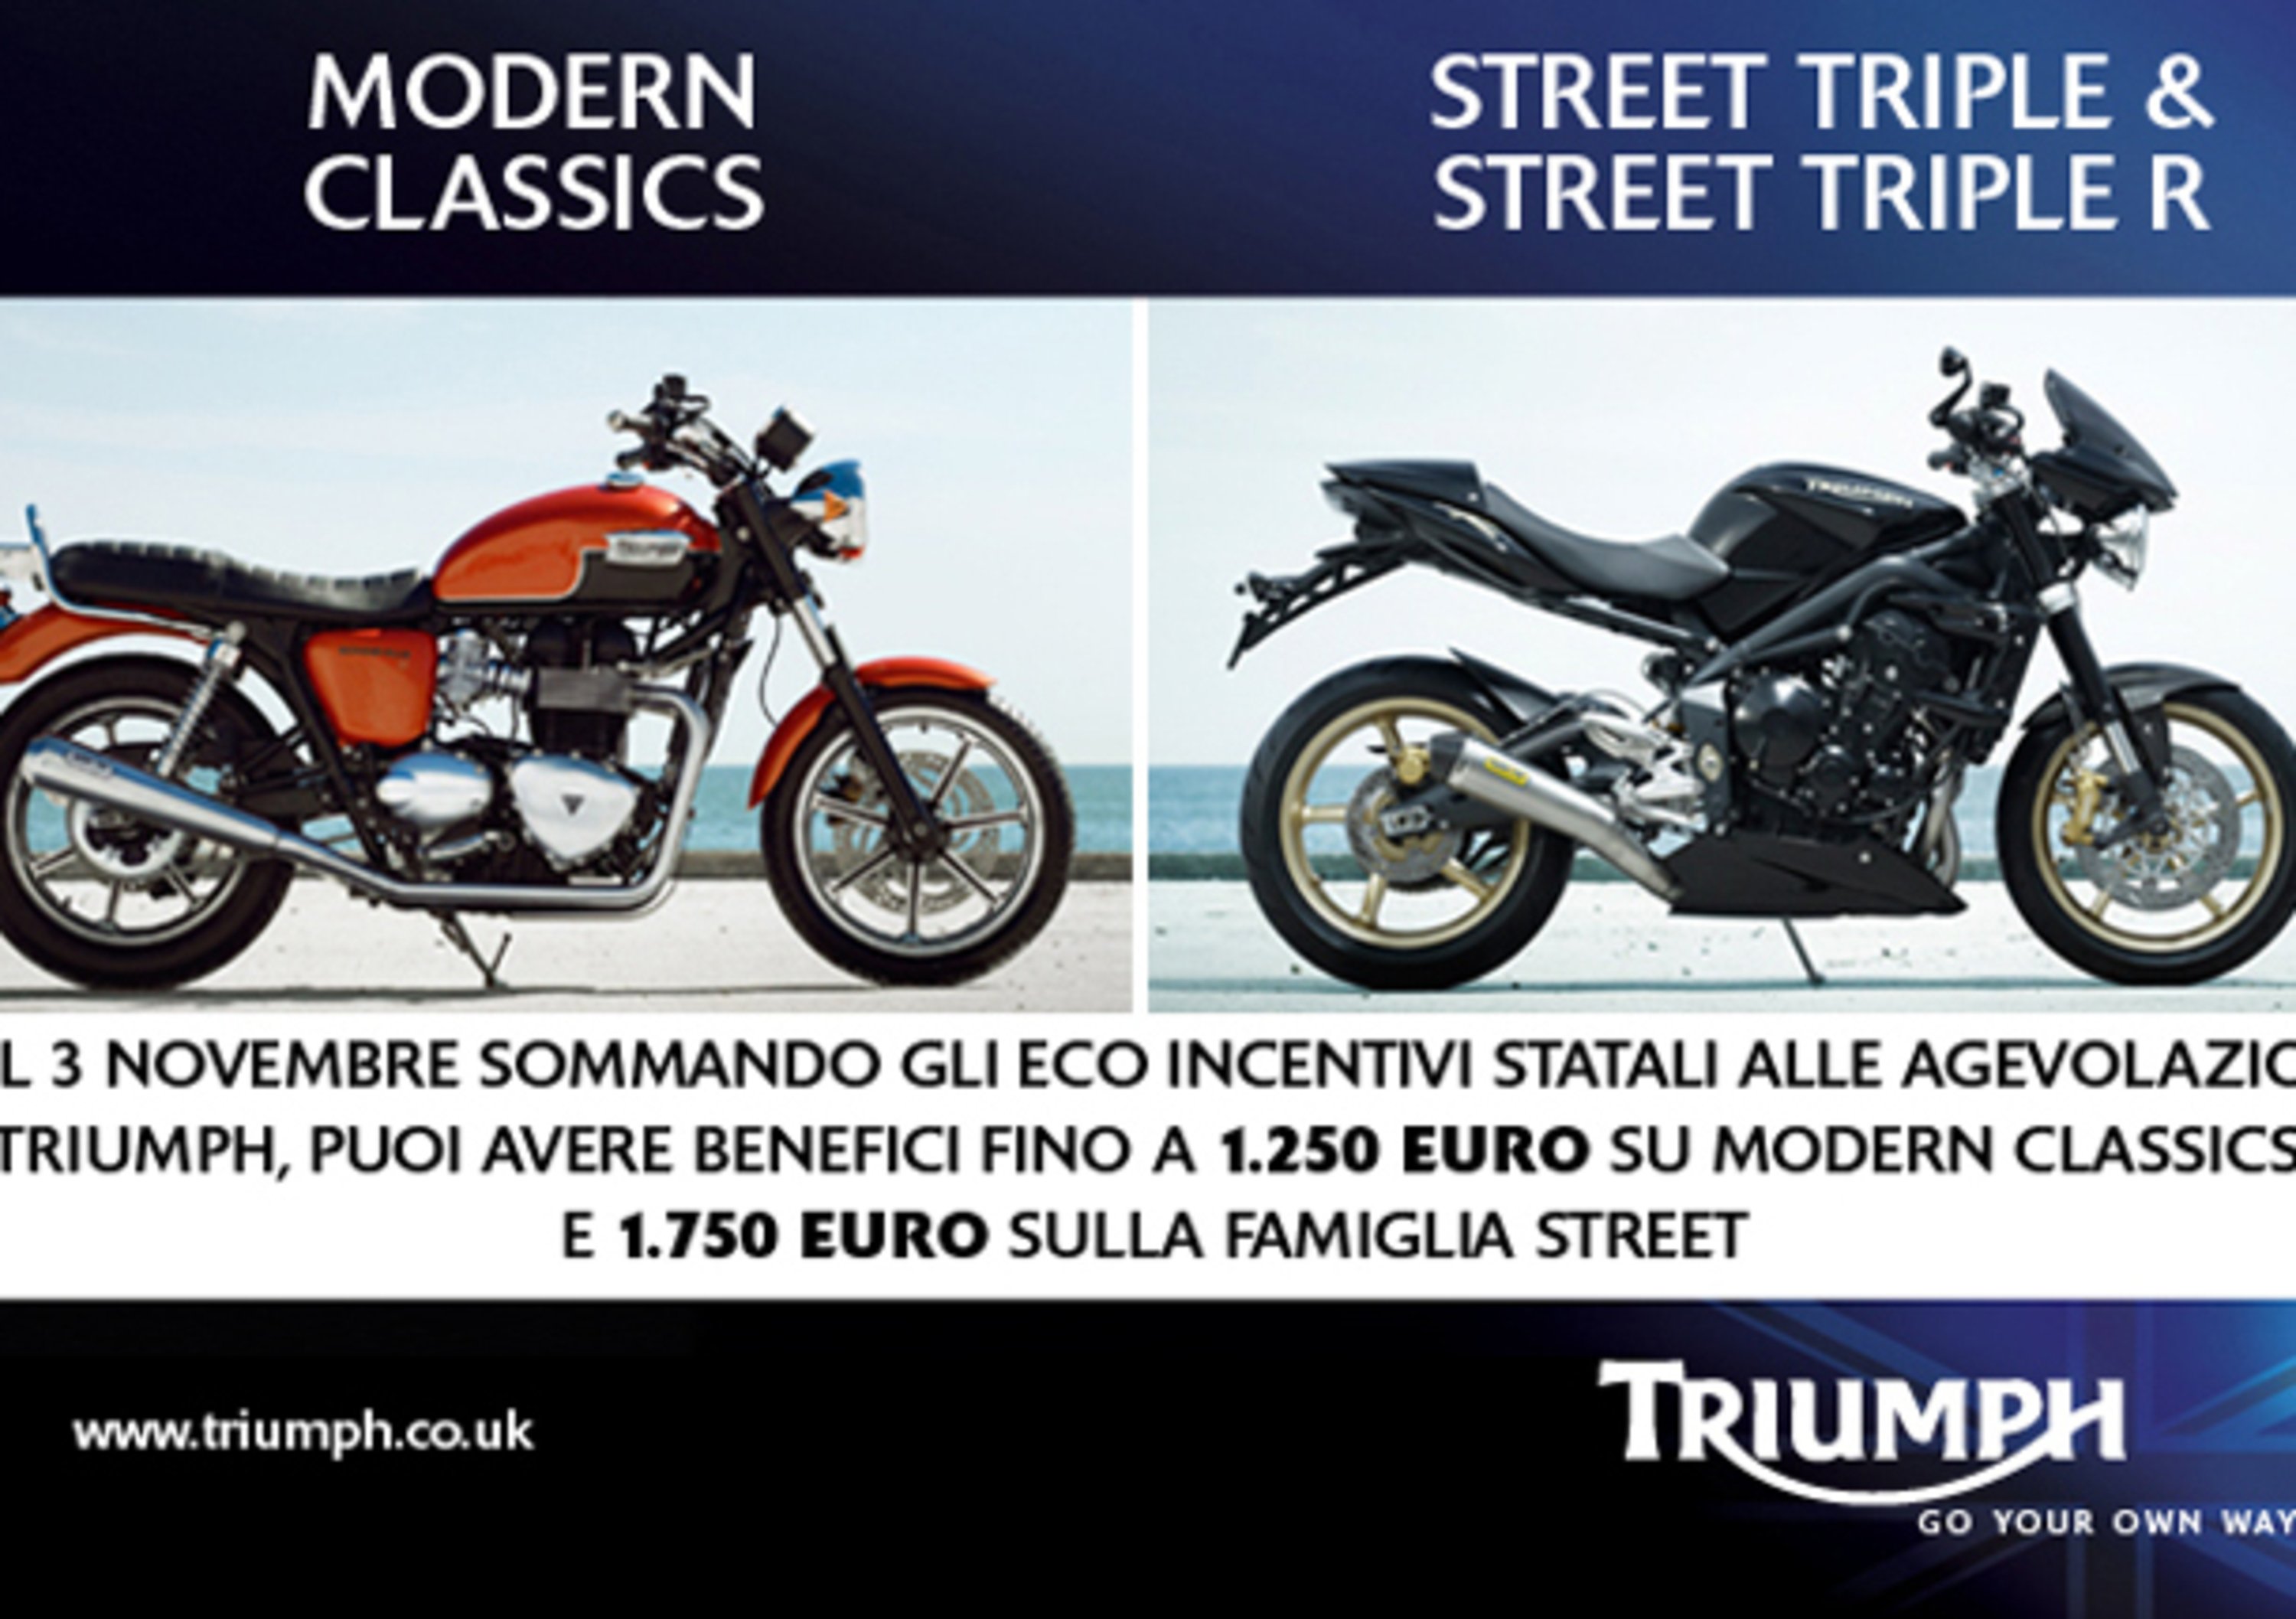 Incentivi: Triumph offre vantaggi fino a 1.750 Euro